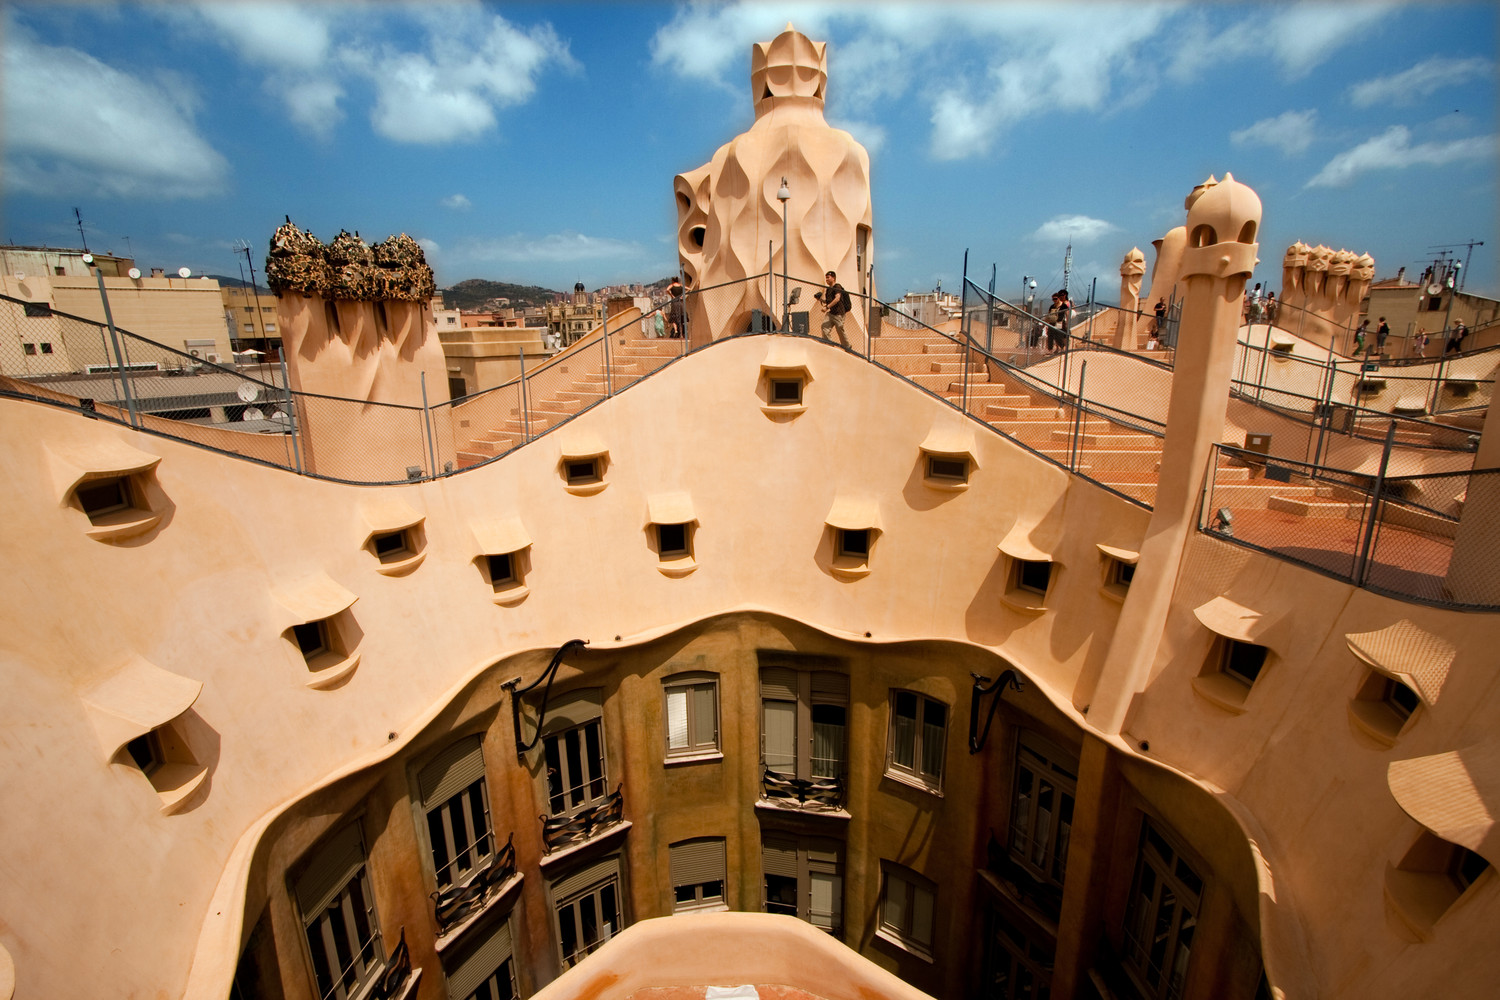 Барселона – колыбель архитектурного гения антонио гауди